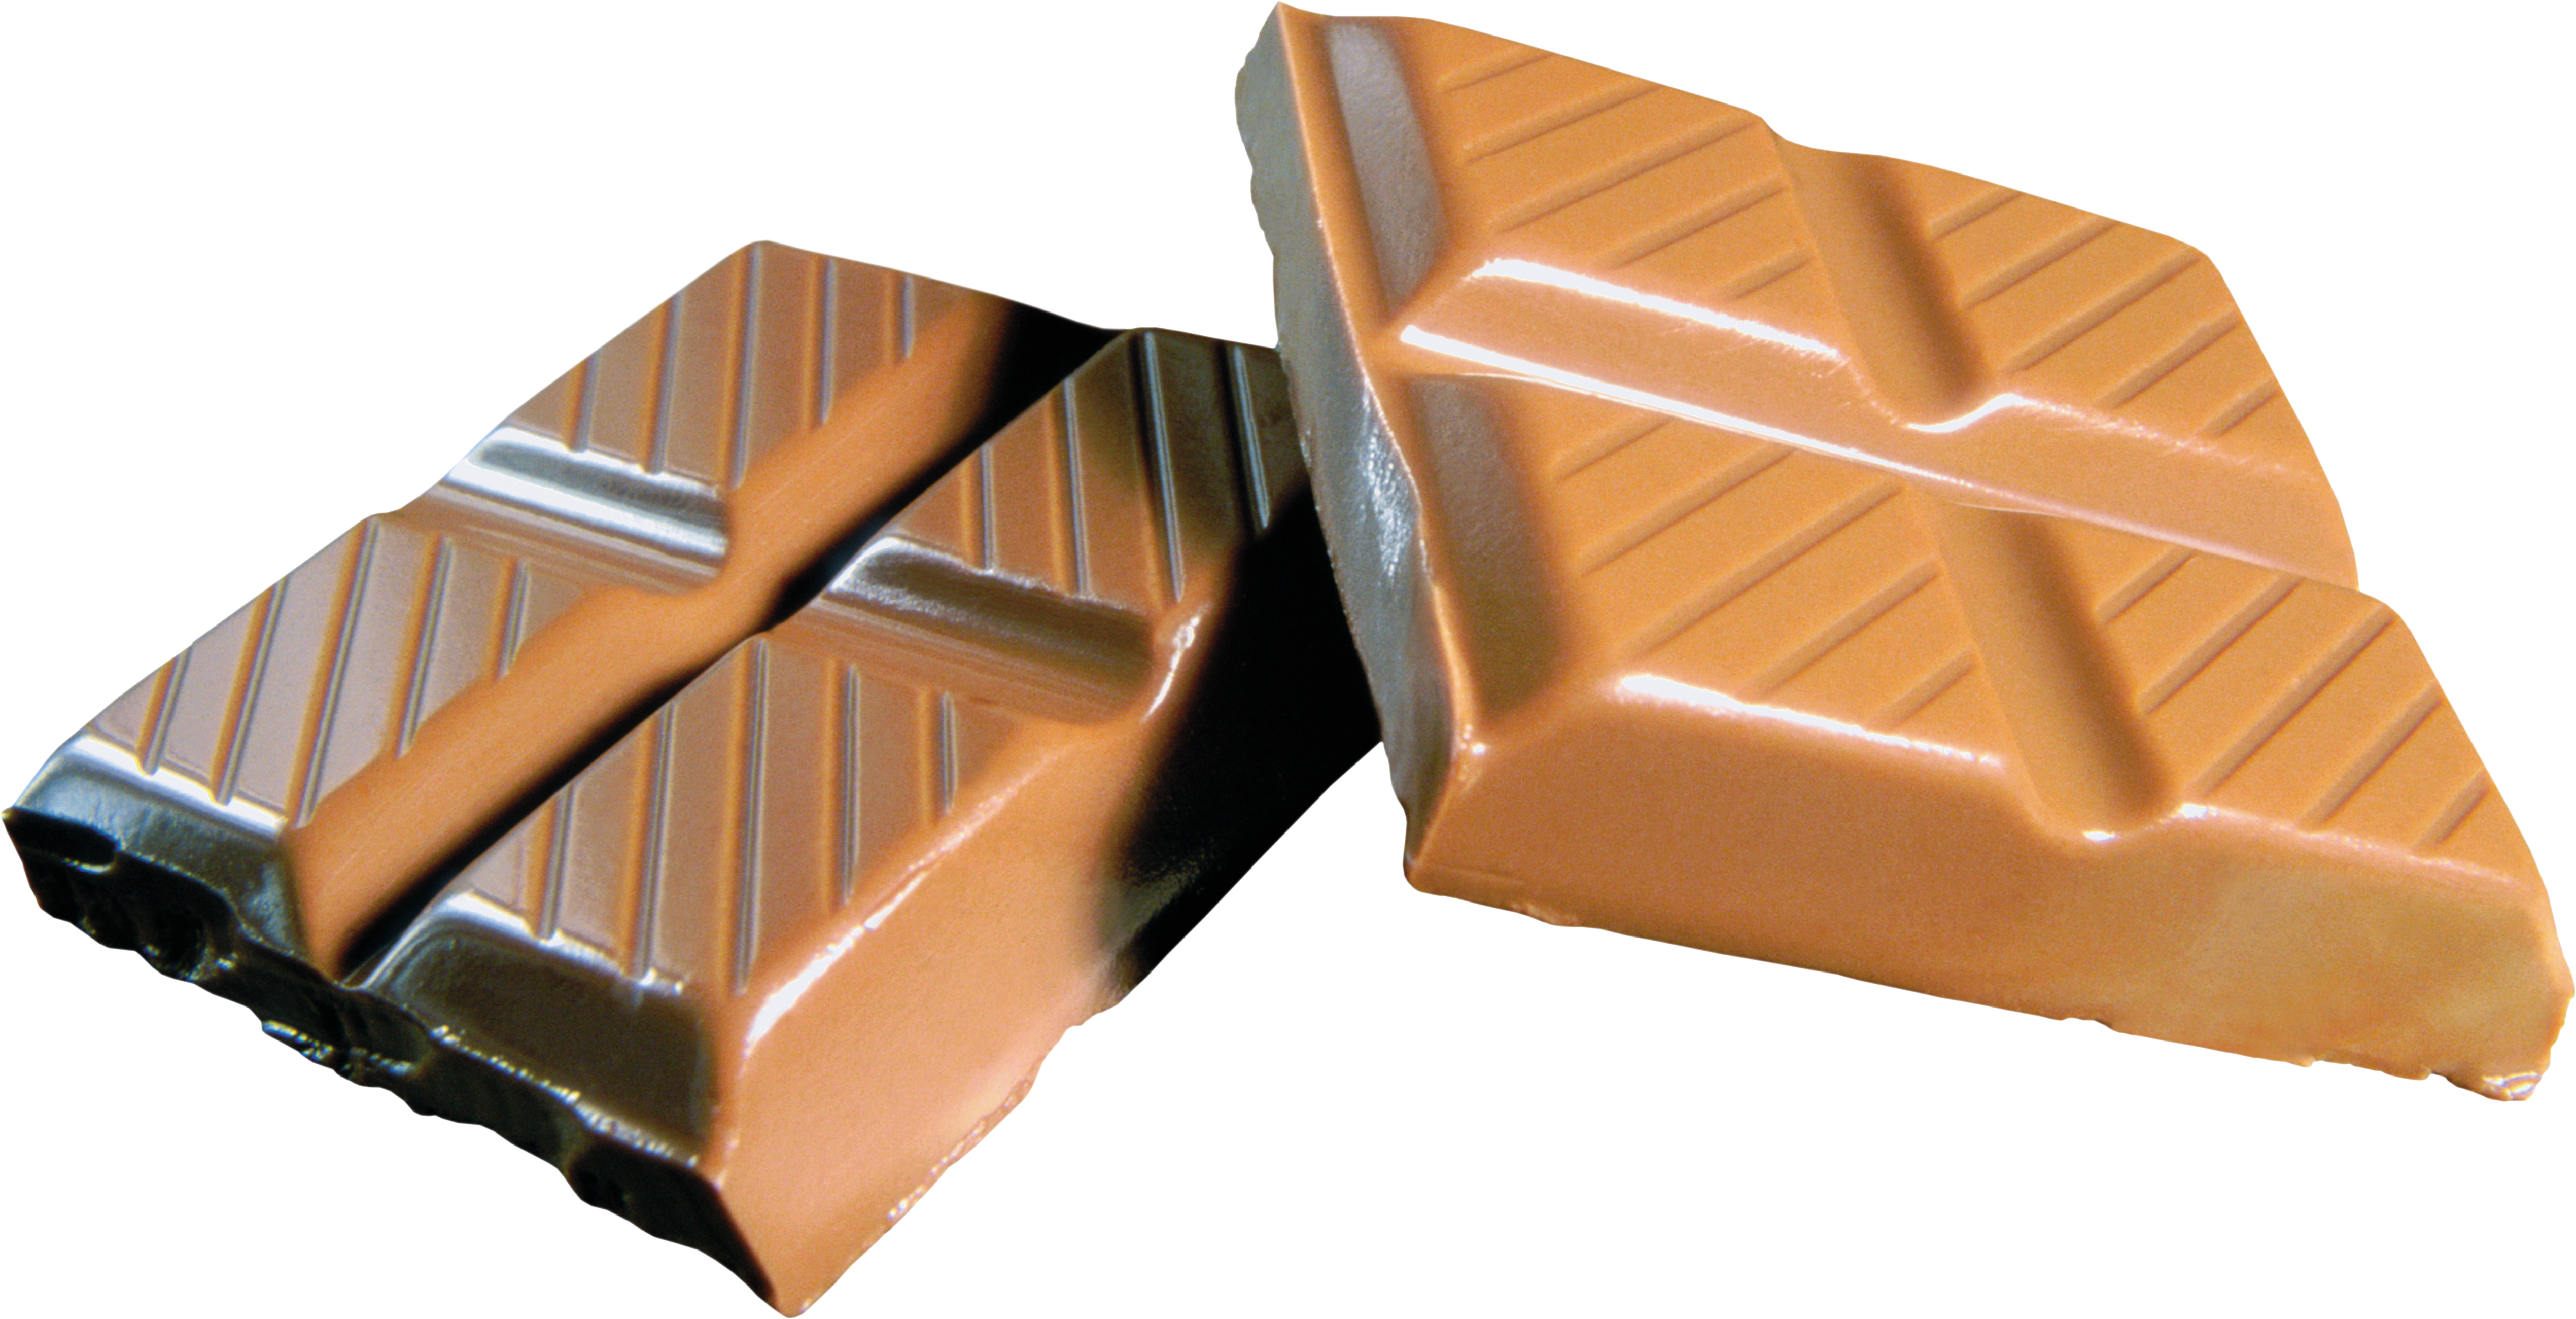 Cokelat